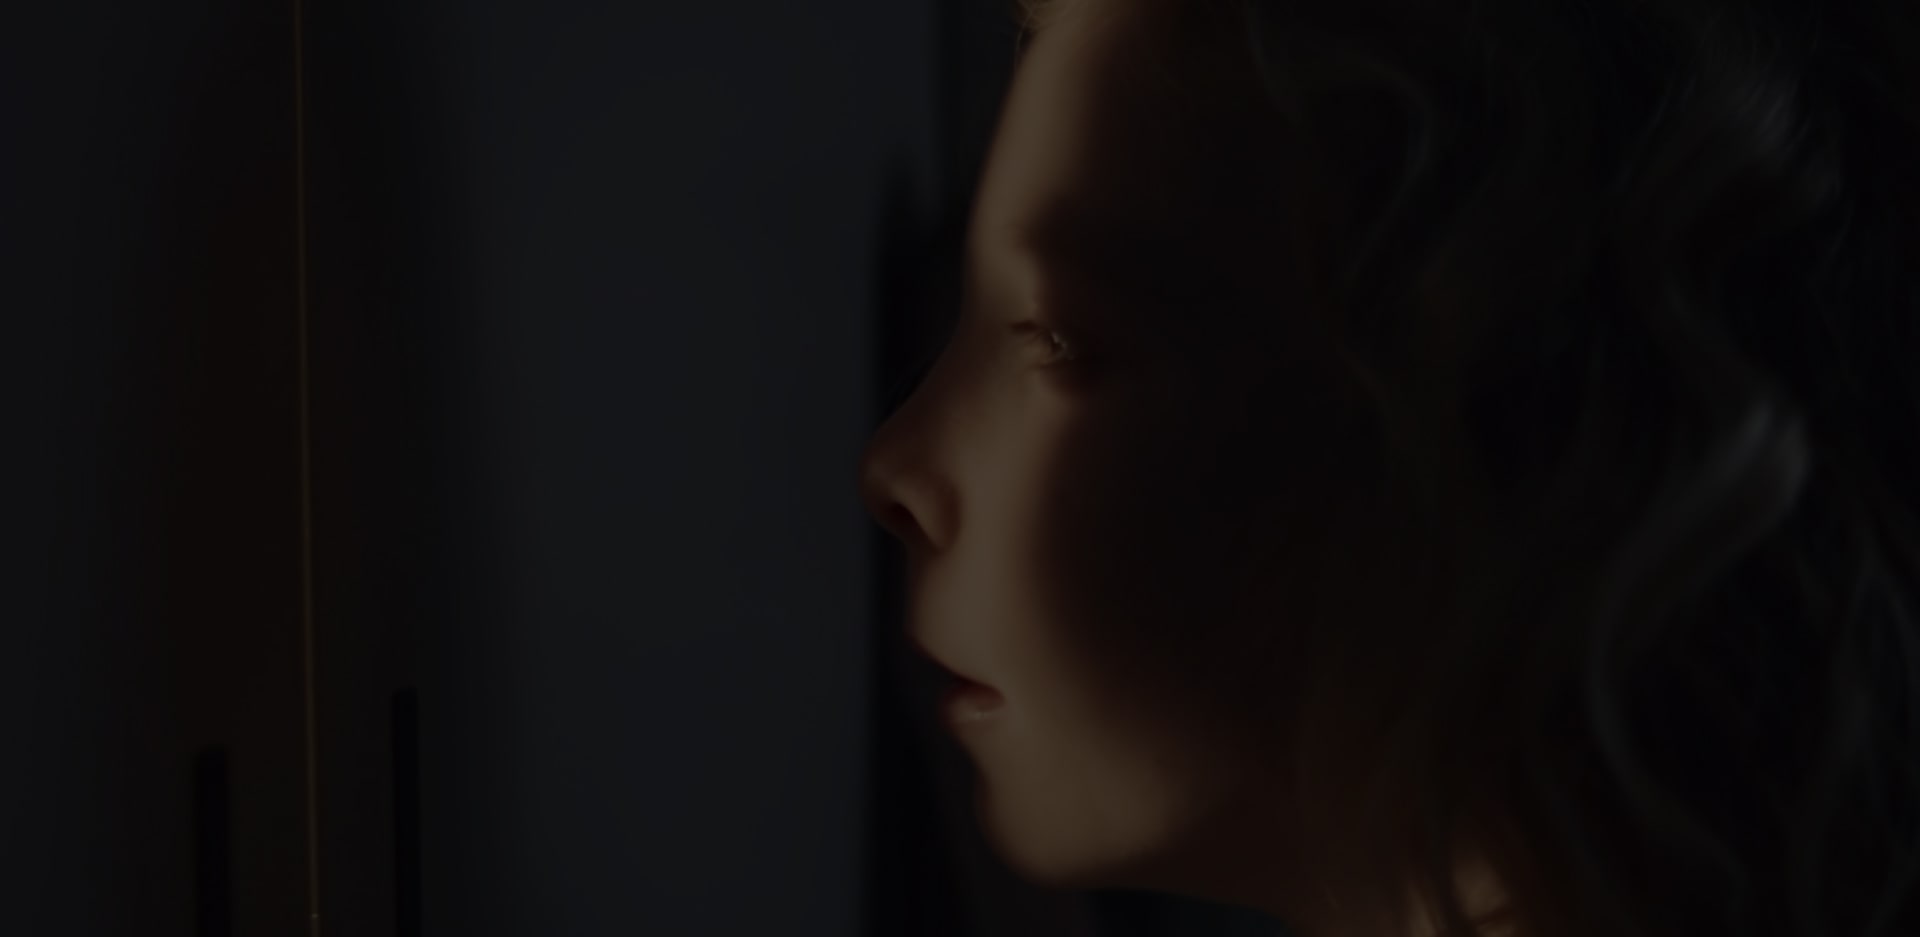 Eine Nahaufnahme vom Gesicht eines Mädchens, das sich zum Teil im Schatten, zum Teil im Licht befindet, während es aus seinem Versteck blickt.